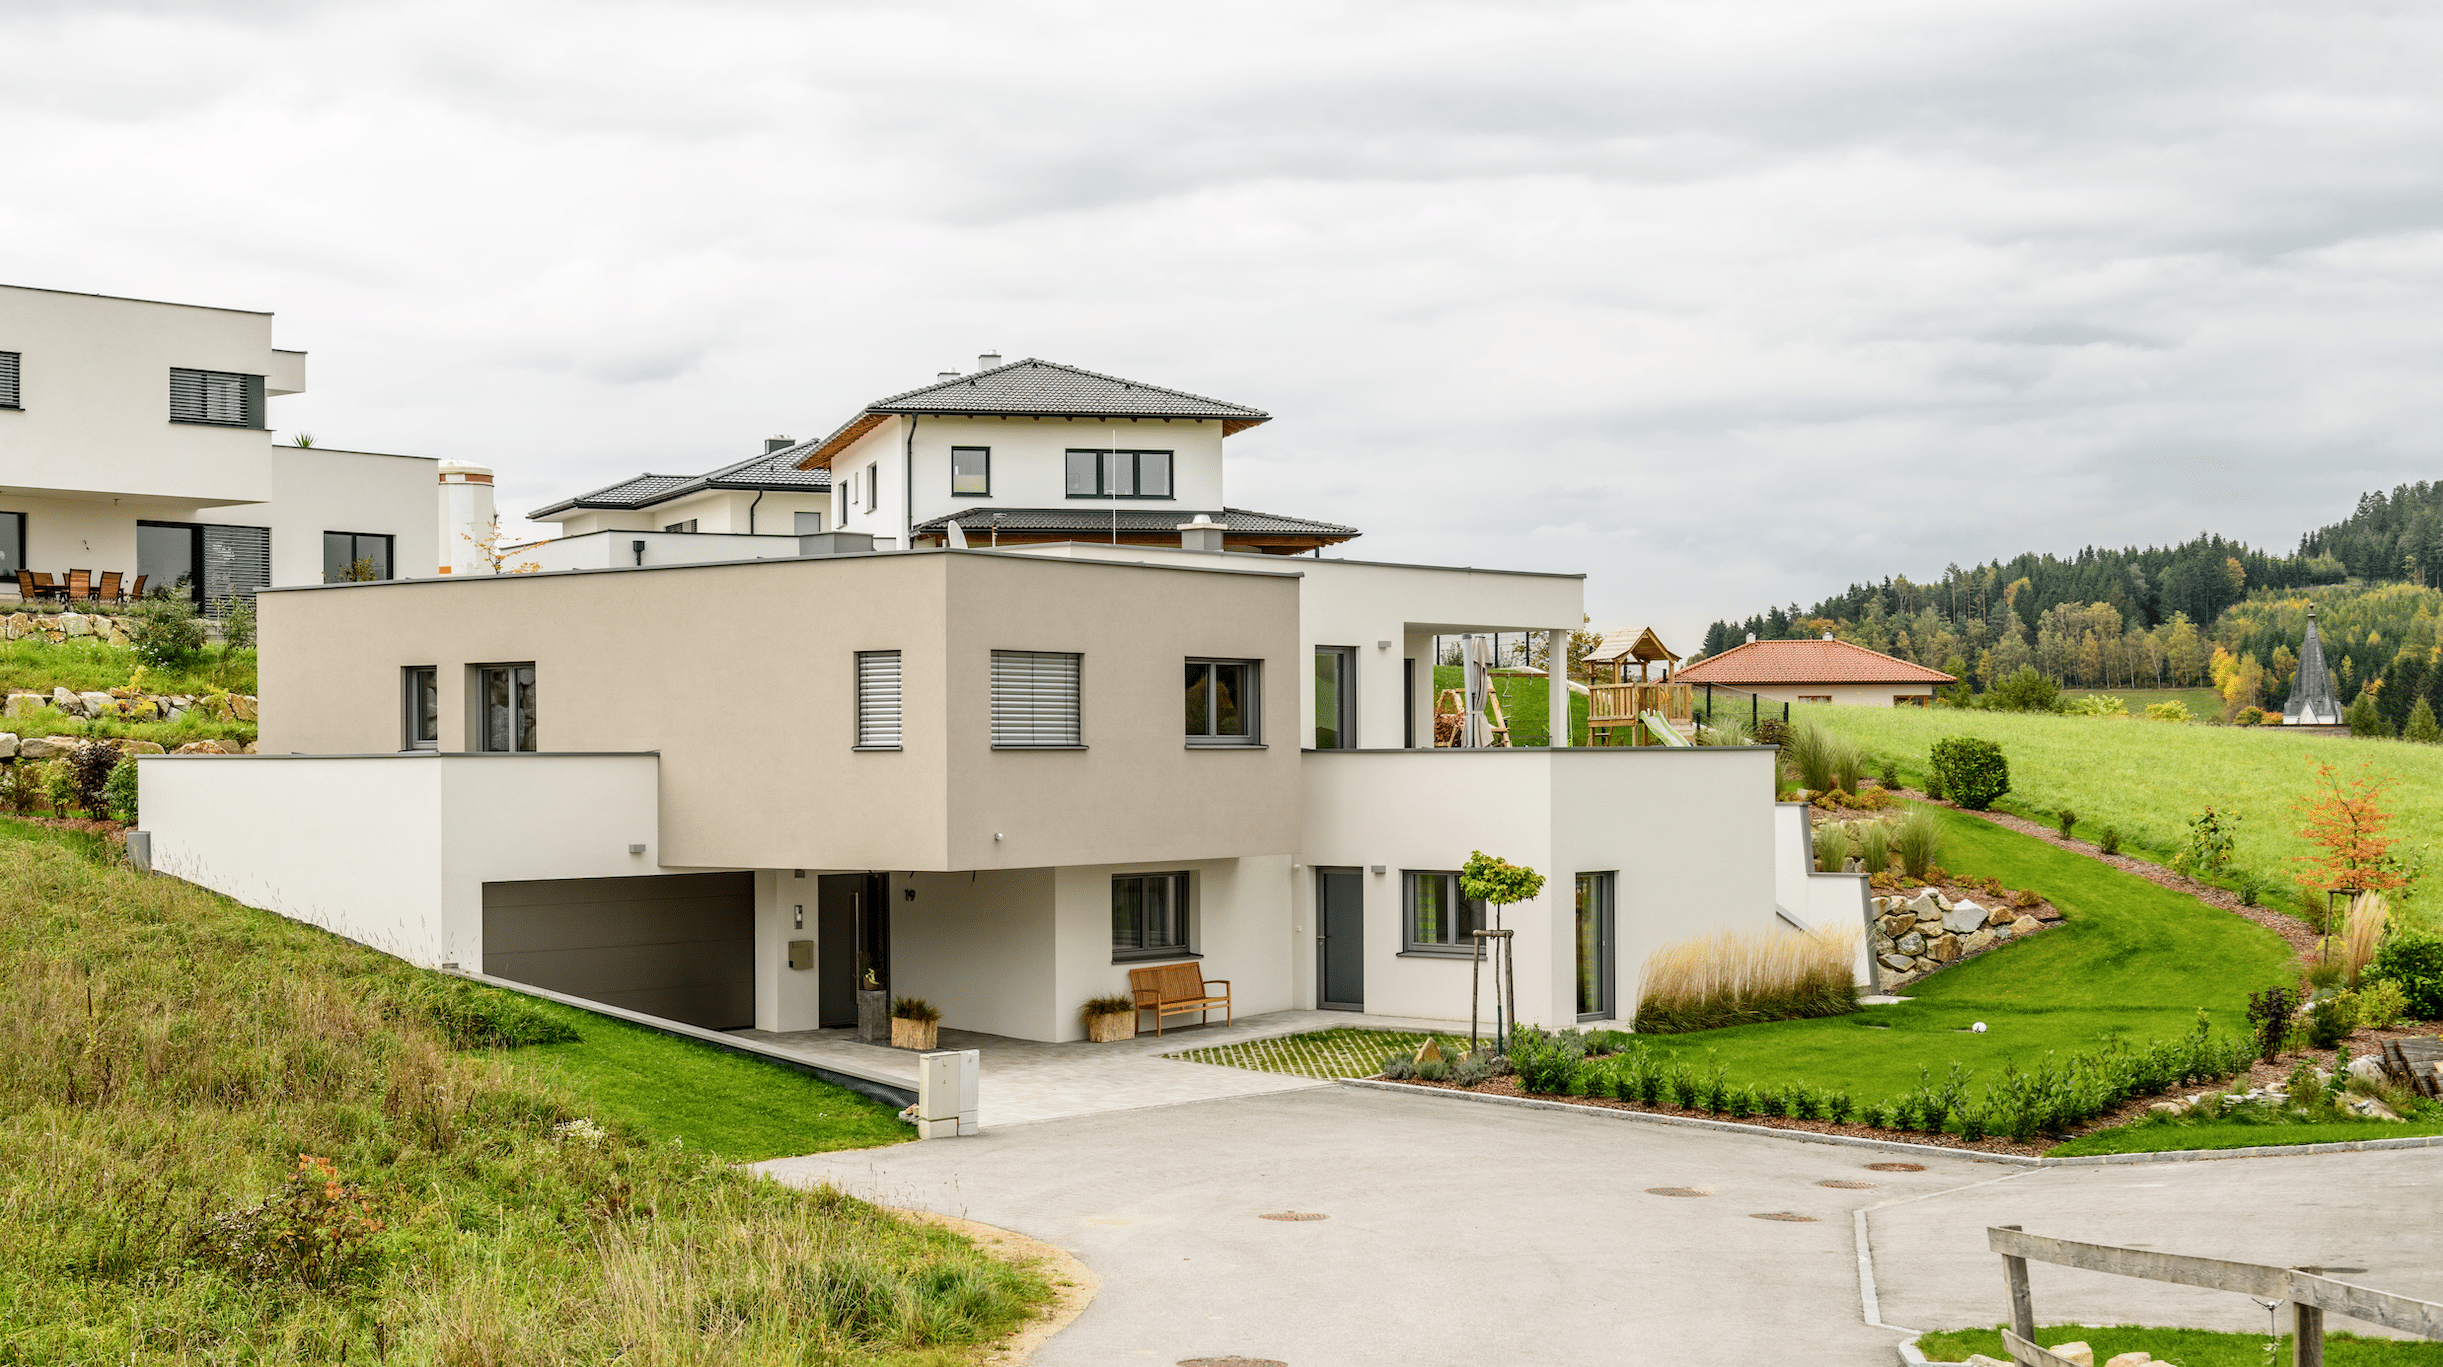 Bad Zeller zeigt ein großes, beige-weißes Einfamilienhaus, mit großer Einfaht, Garage und Flachdach in Hanglage.